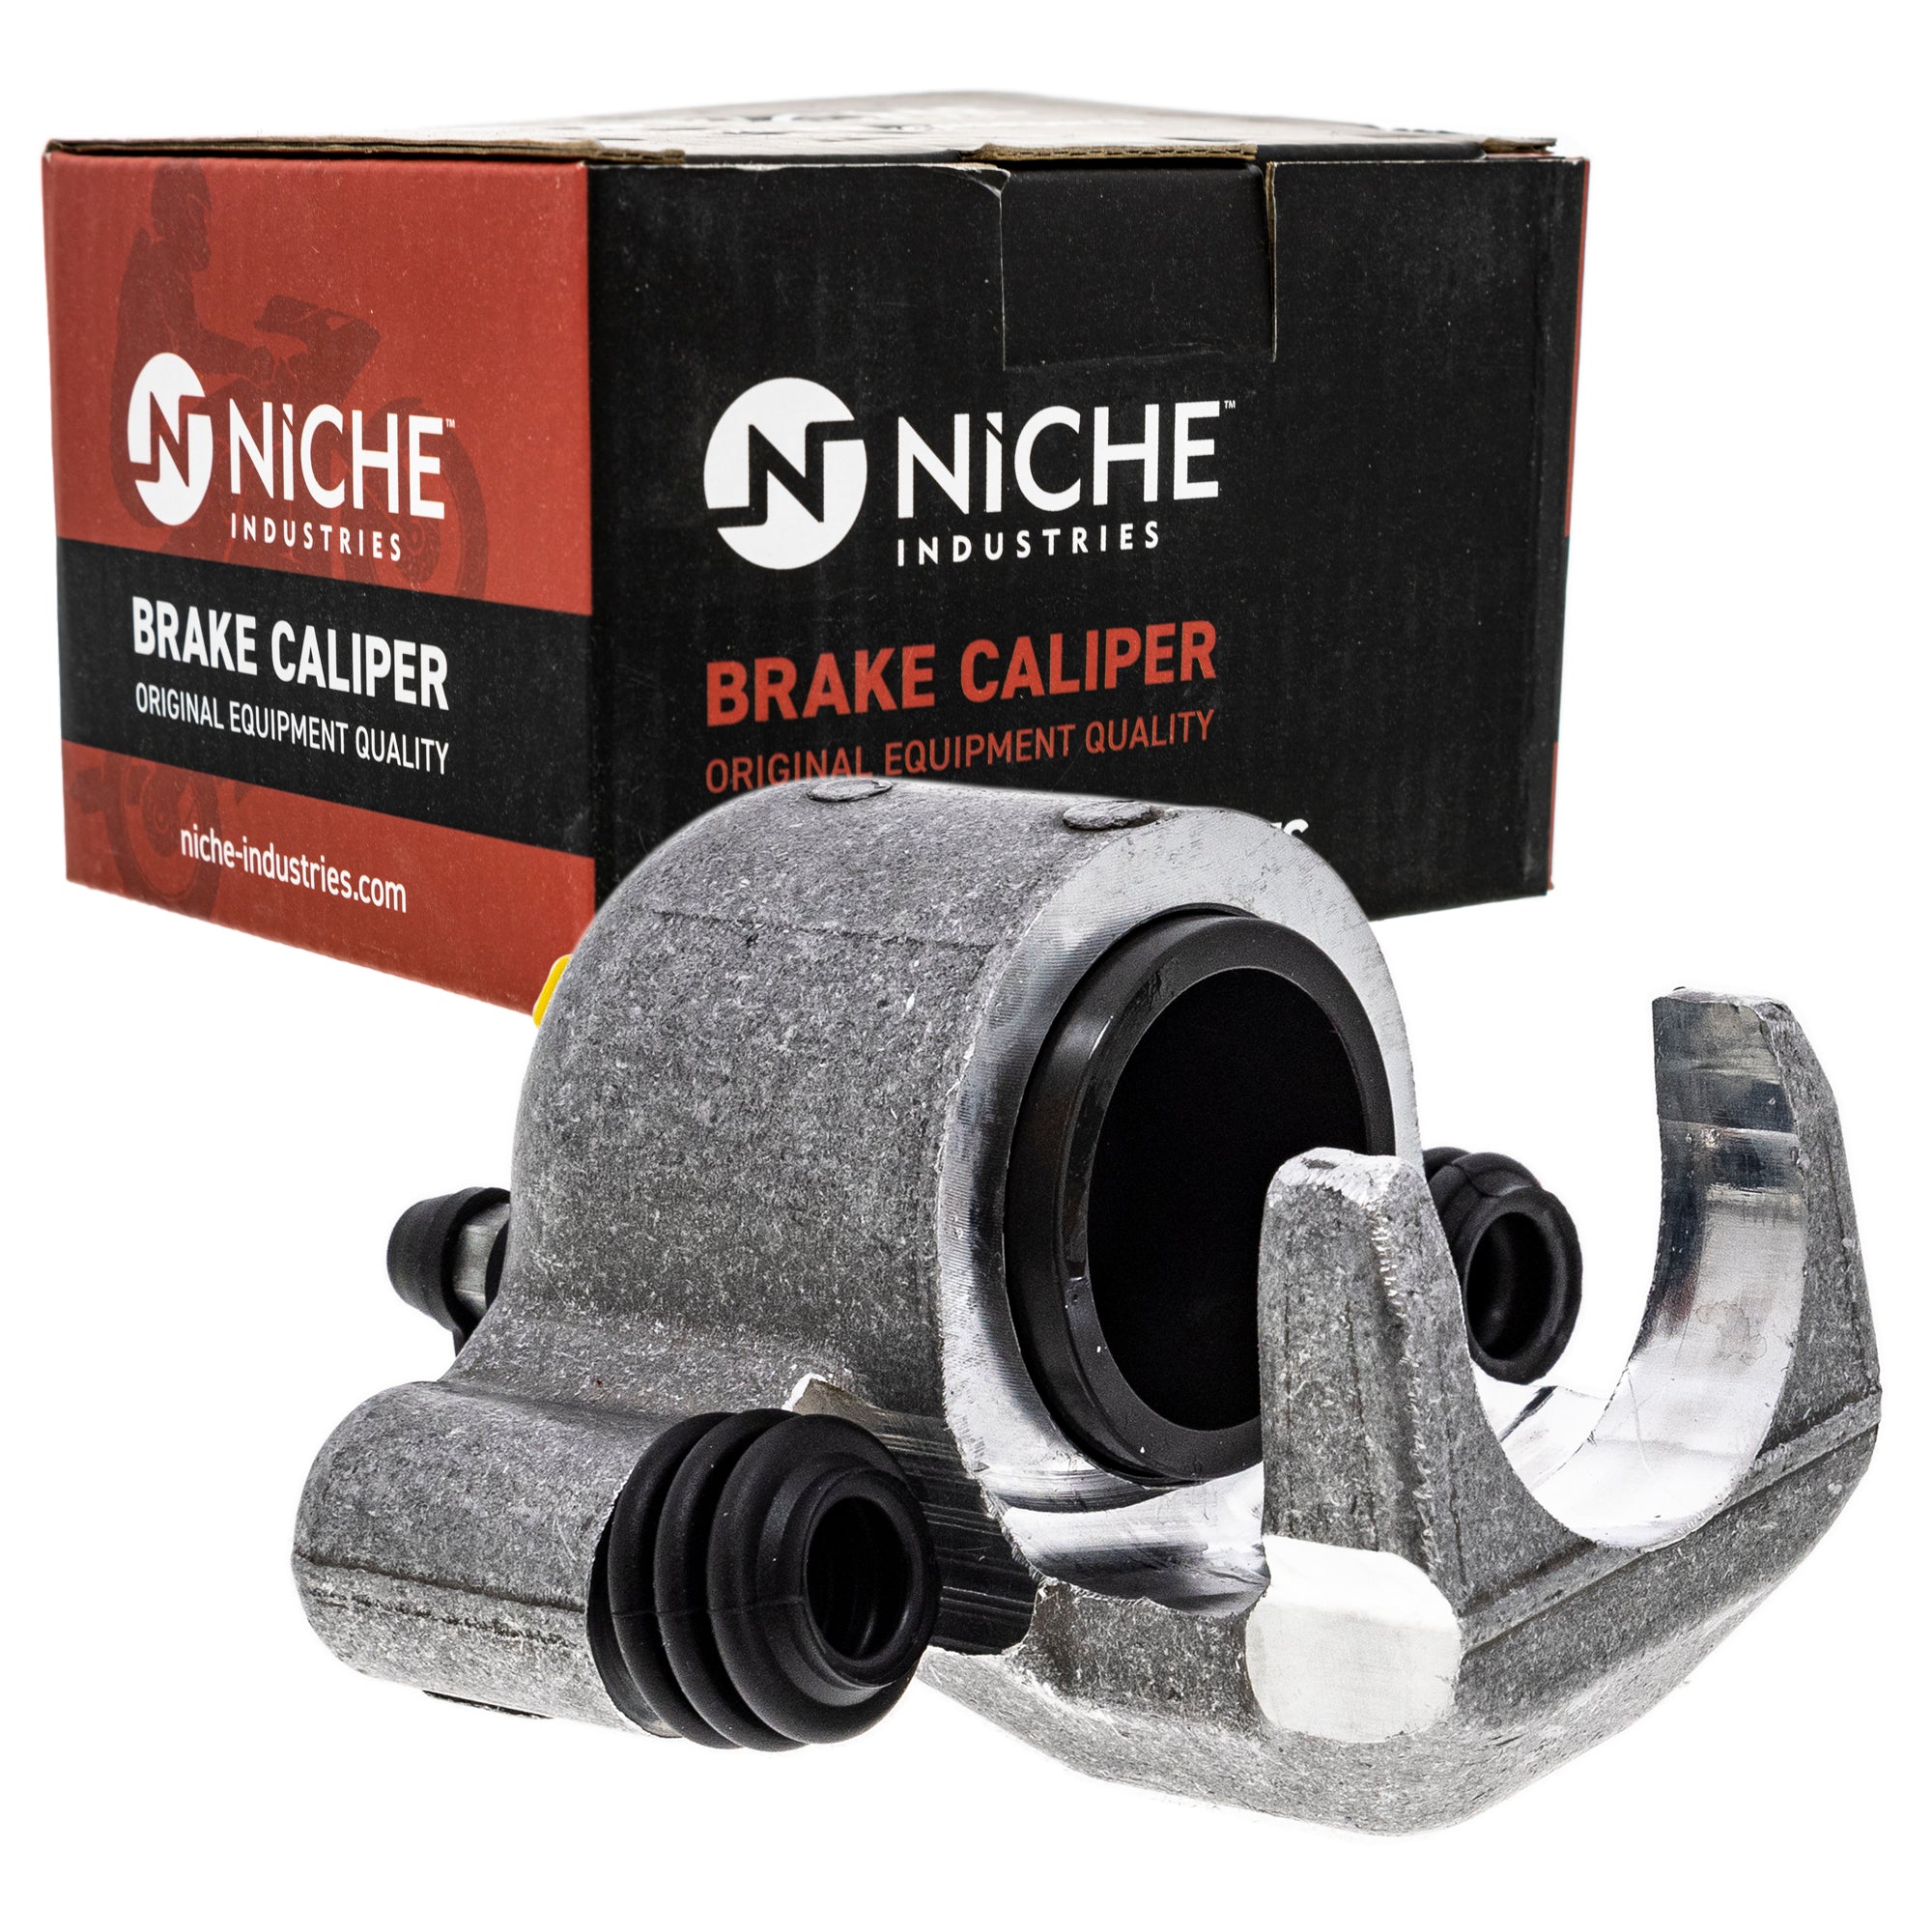 NICHE MK1001009 Brake Caliper Kit